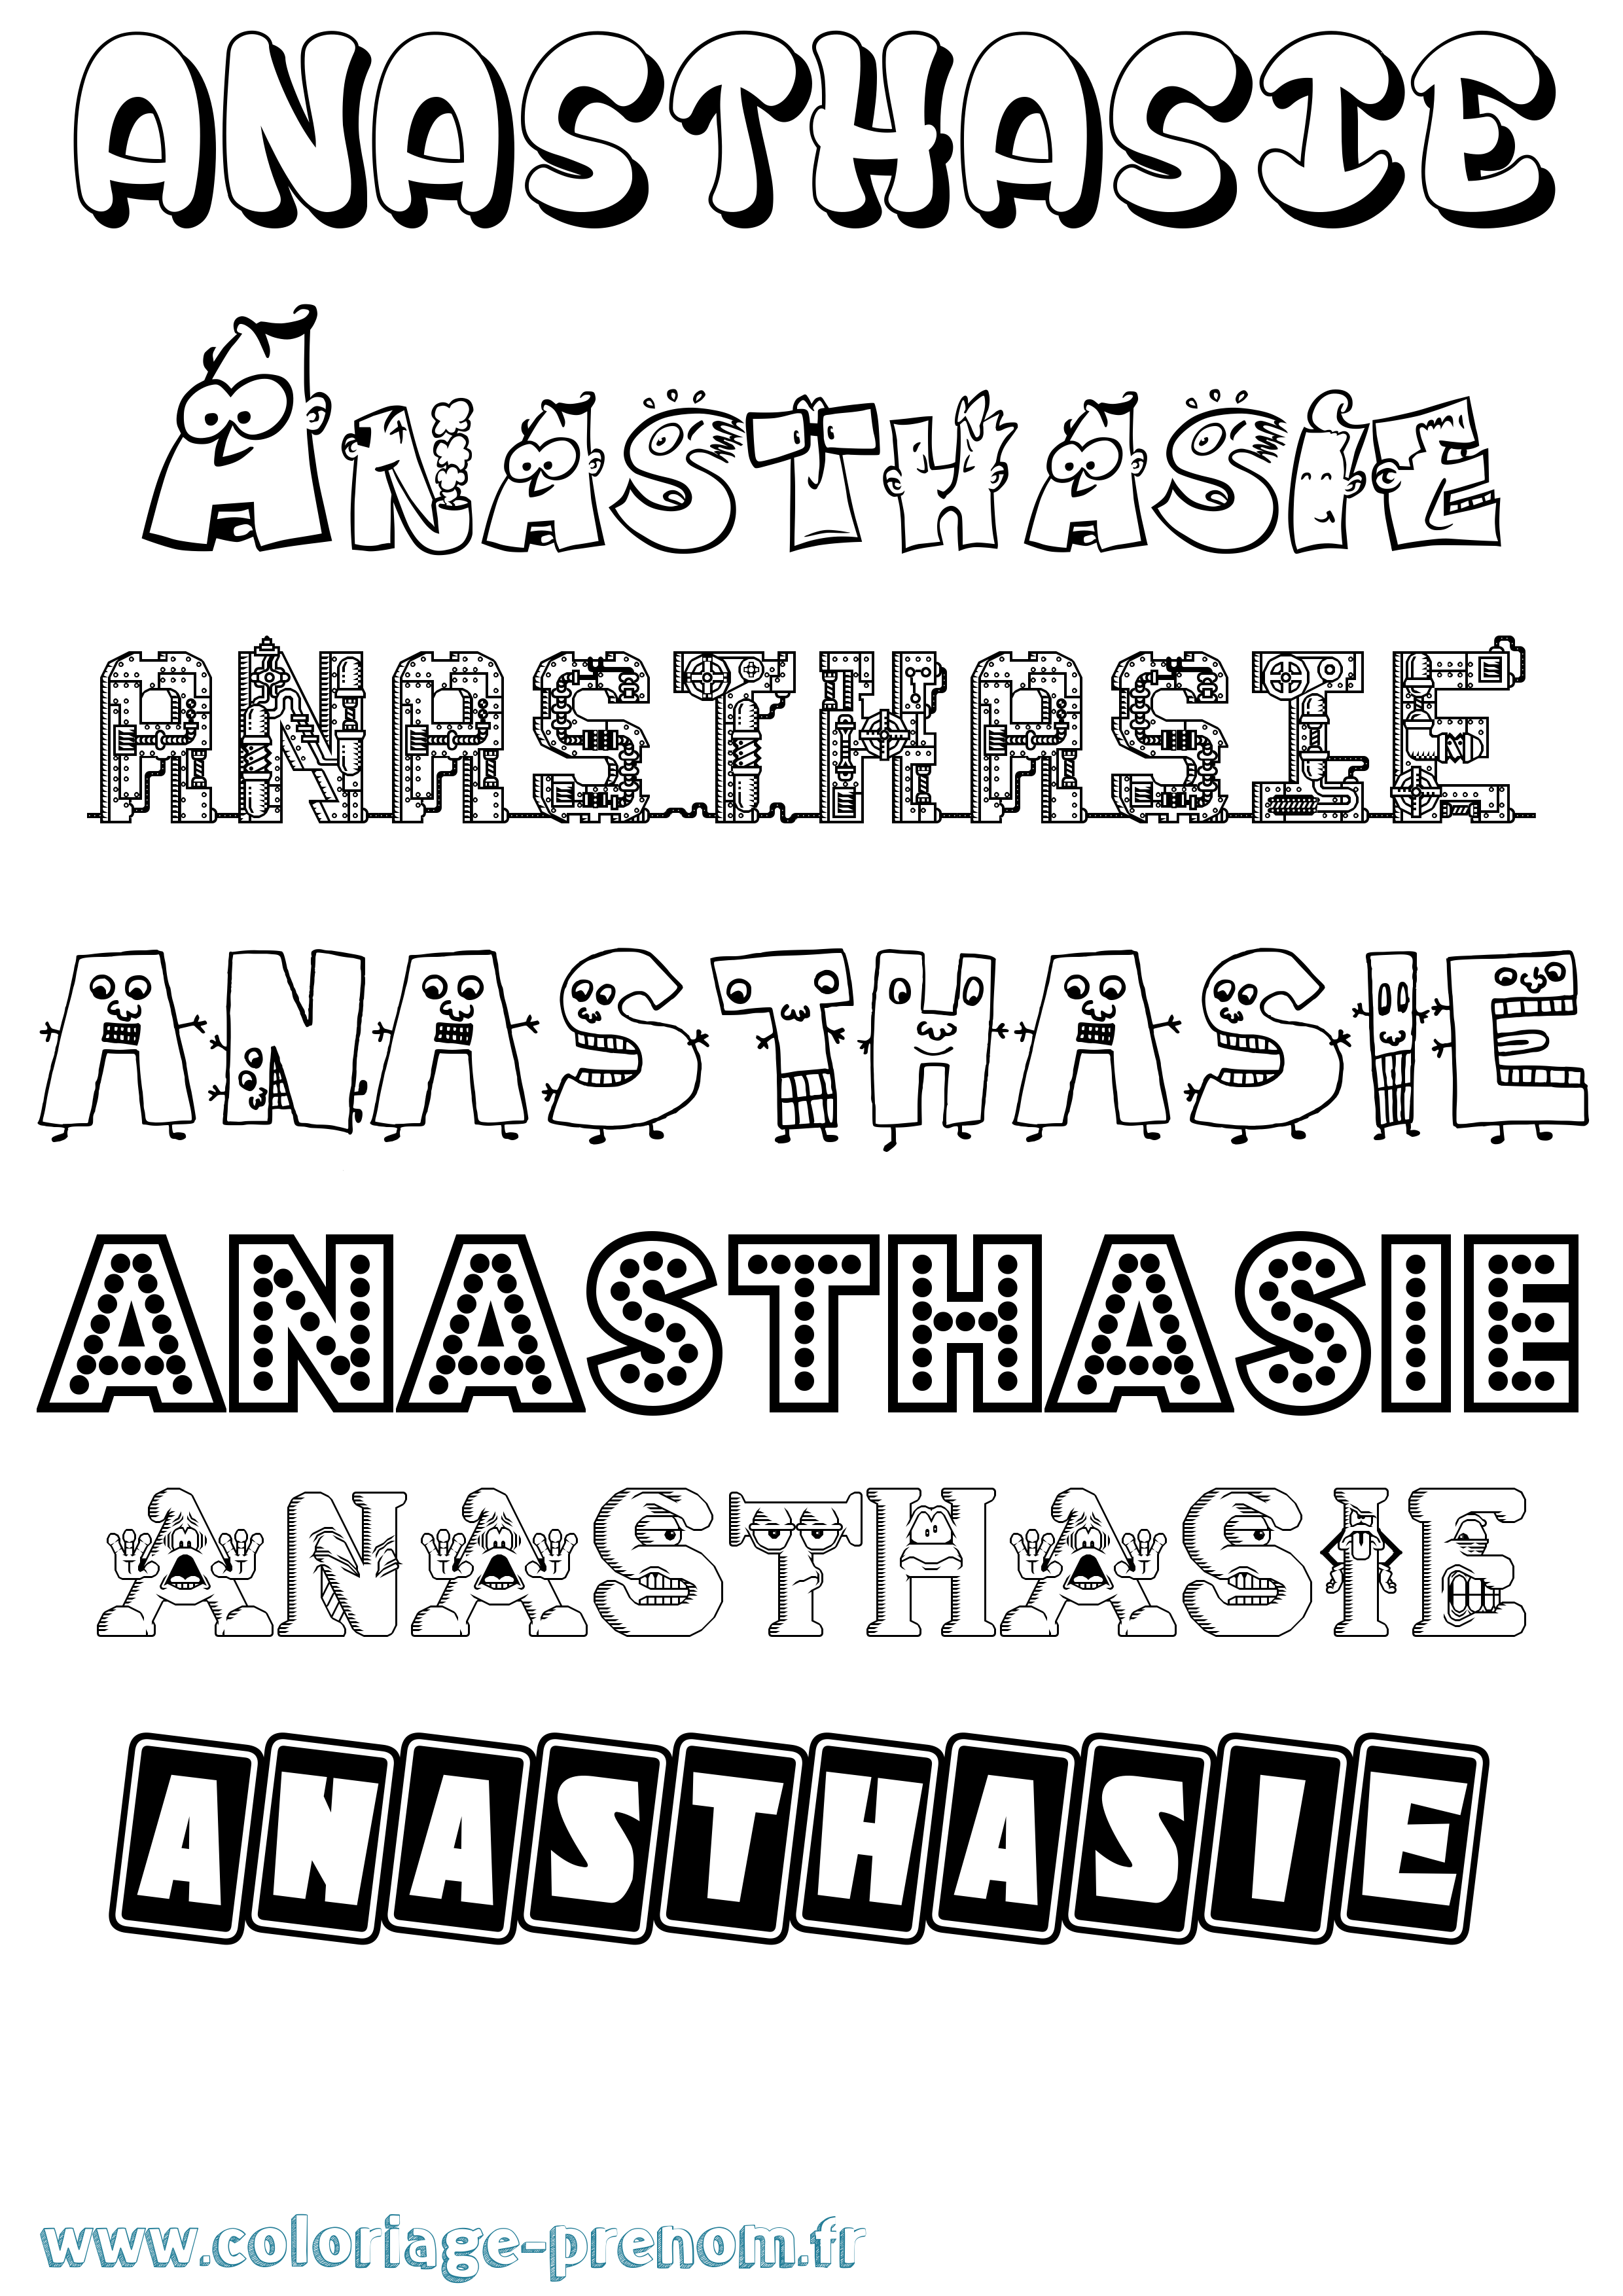 Coloriage prénom Anasthasie Fun